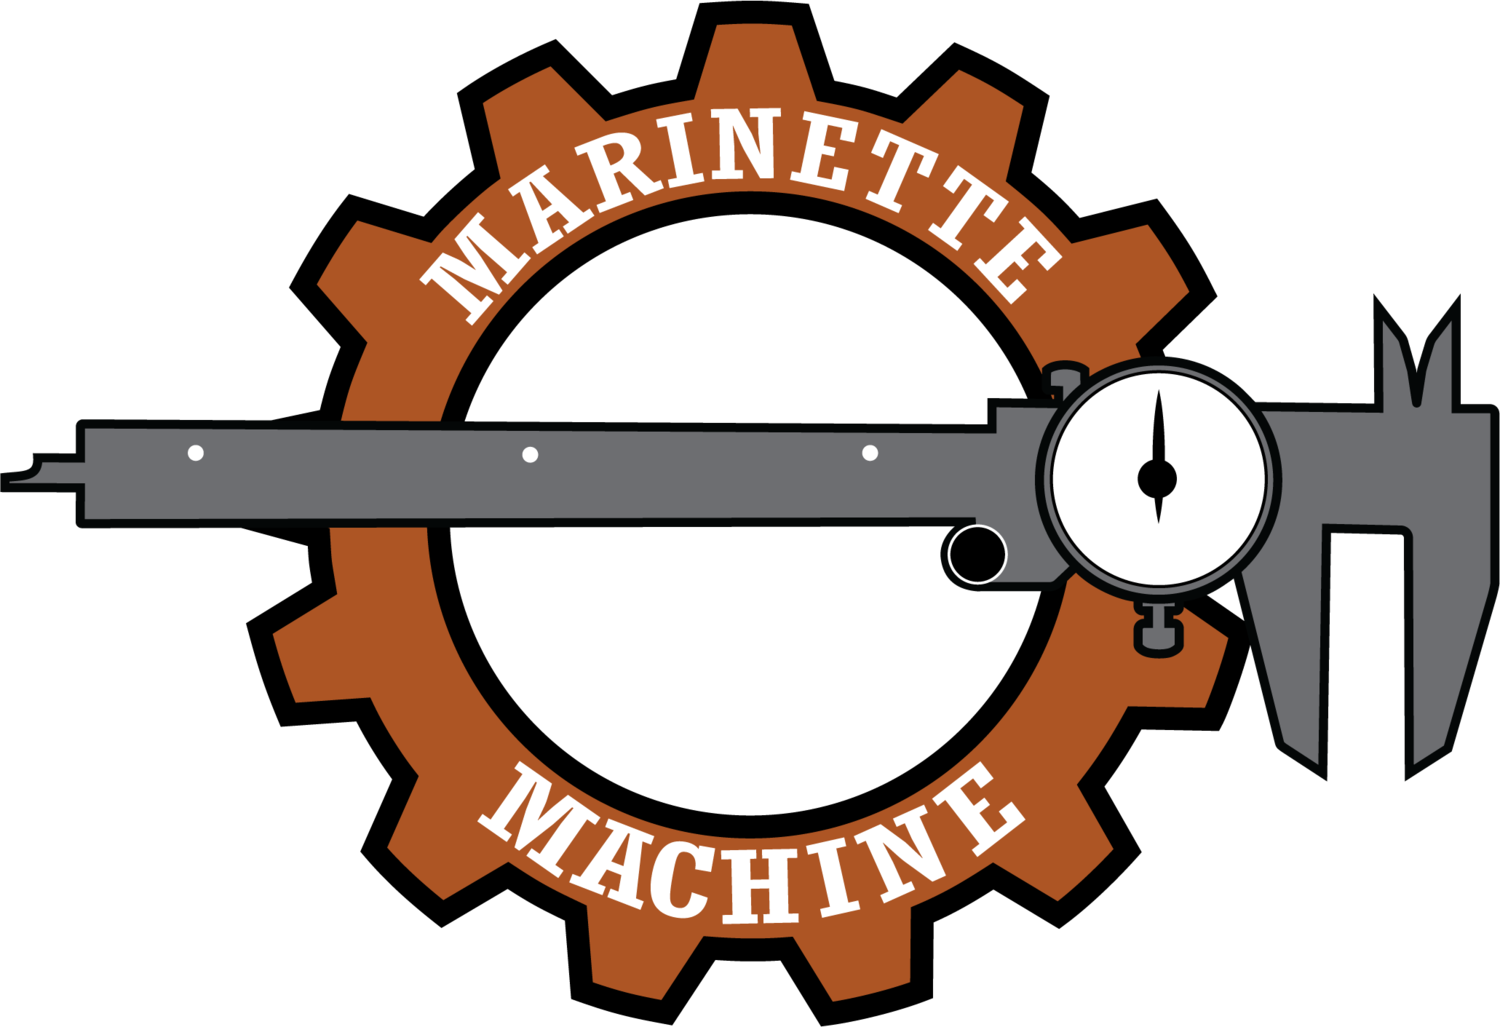 Marinette Machine